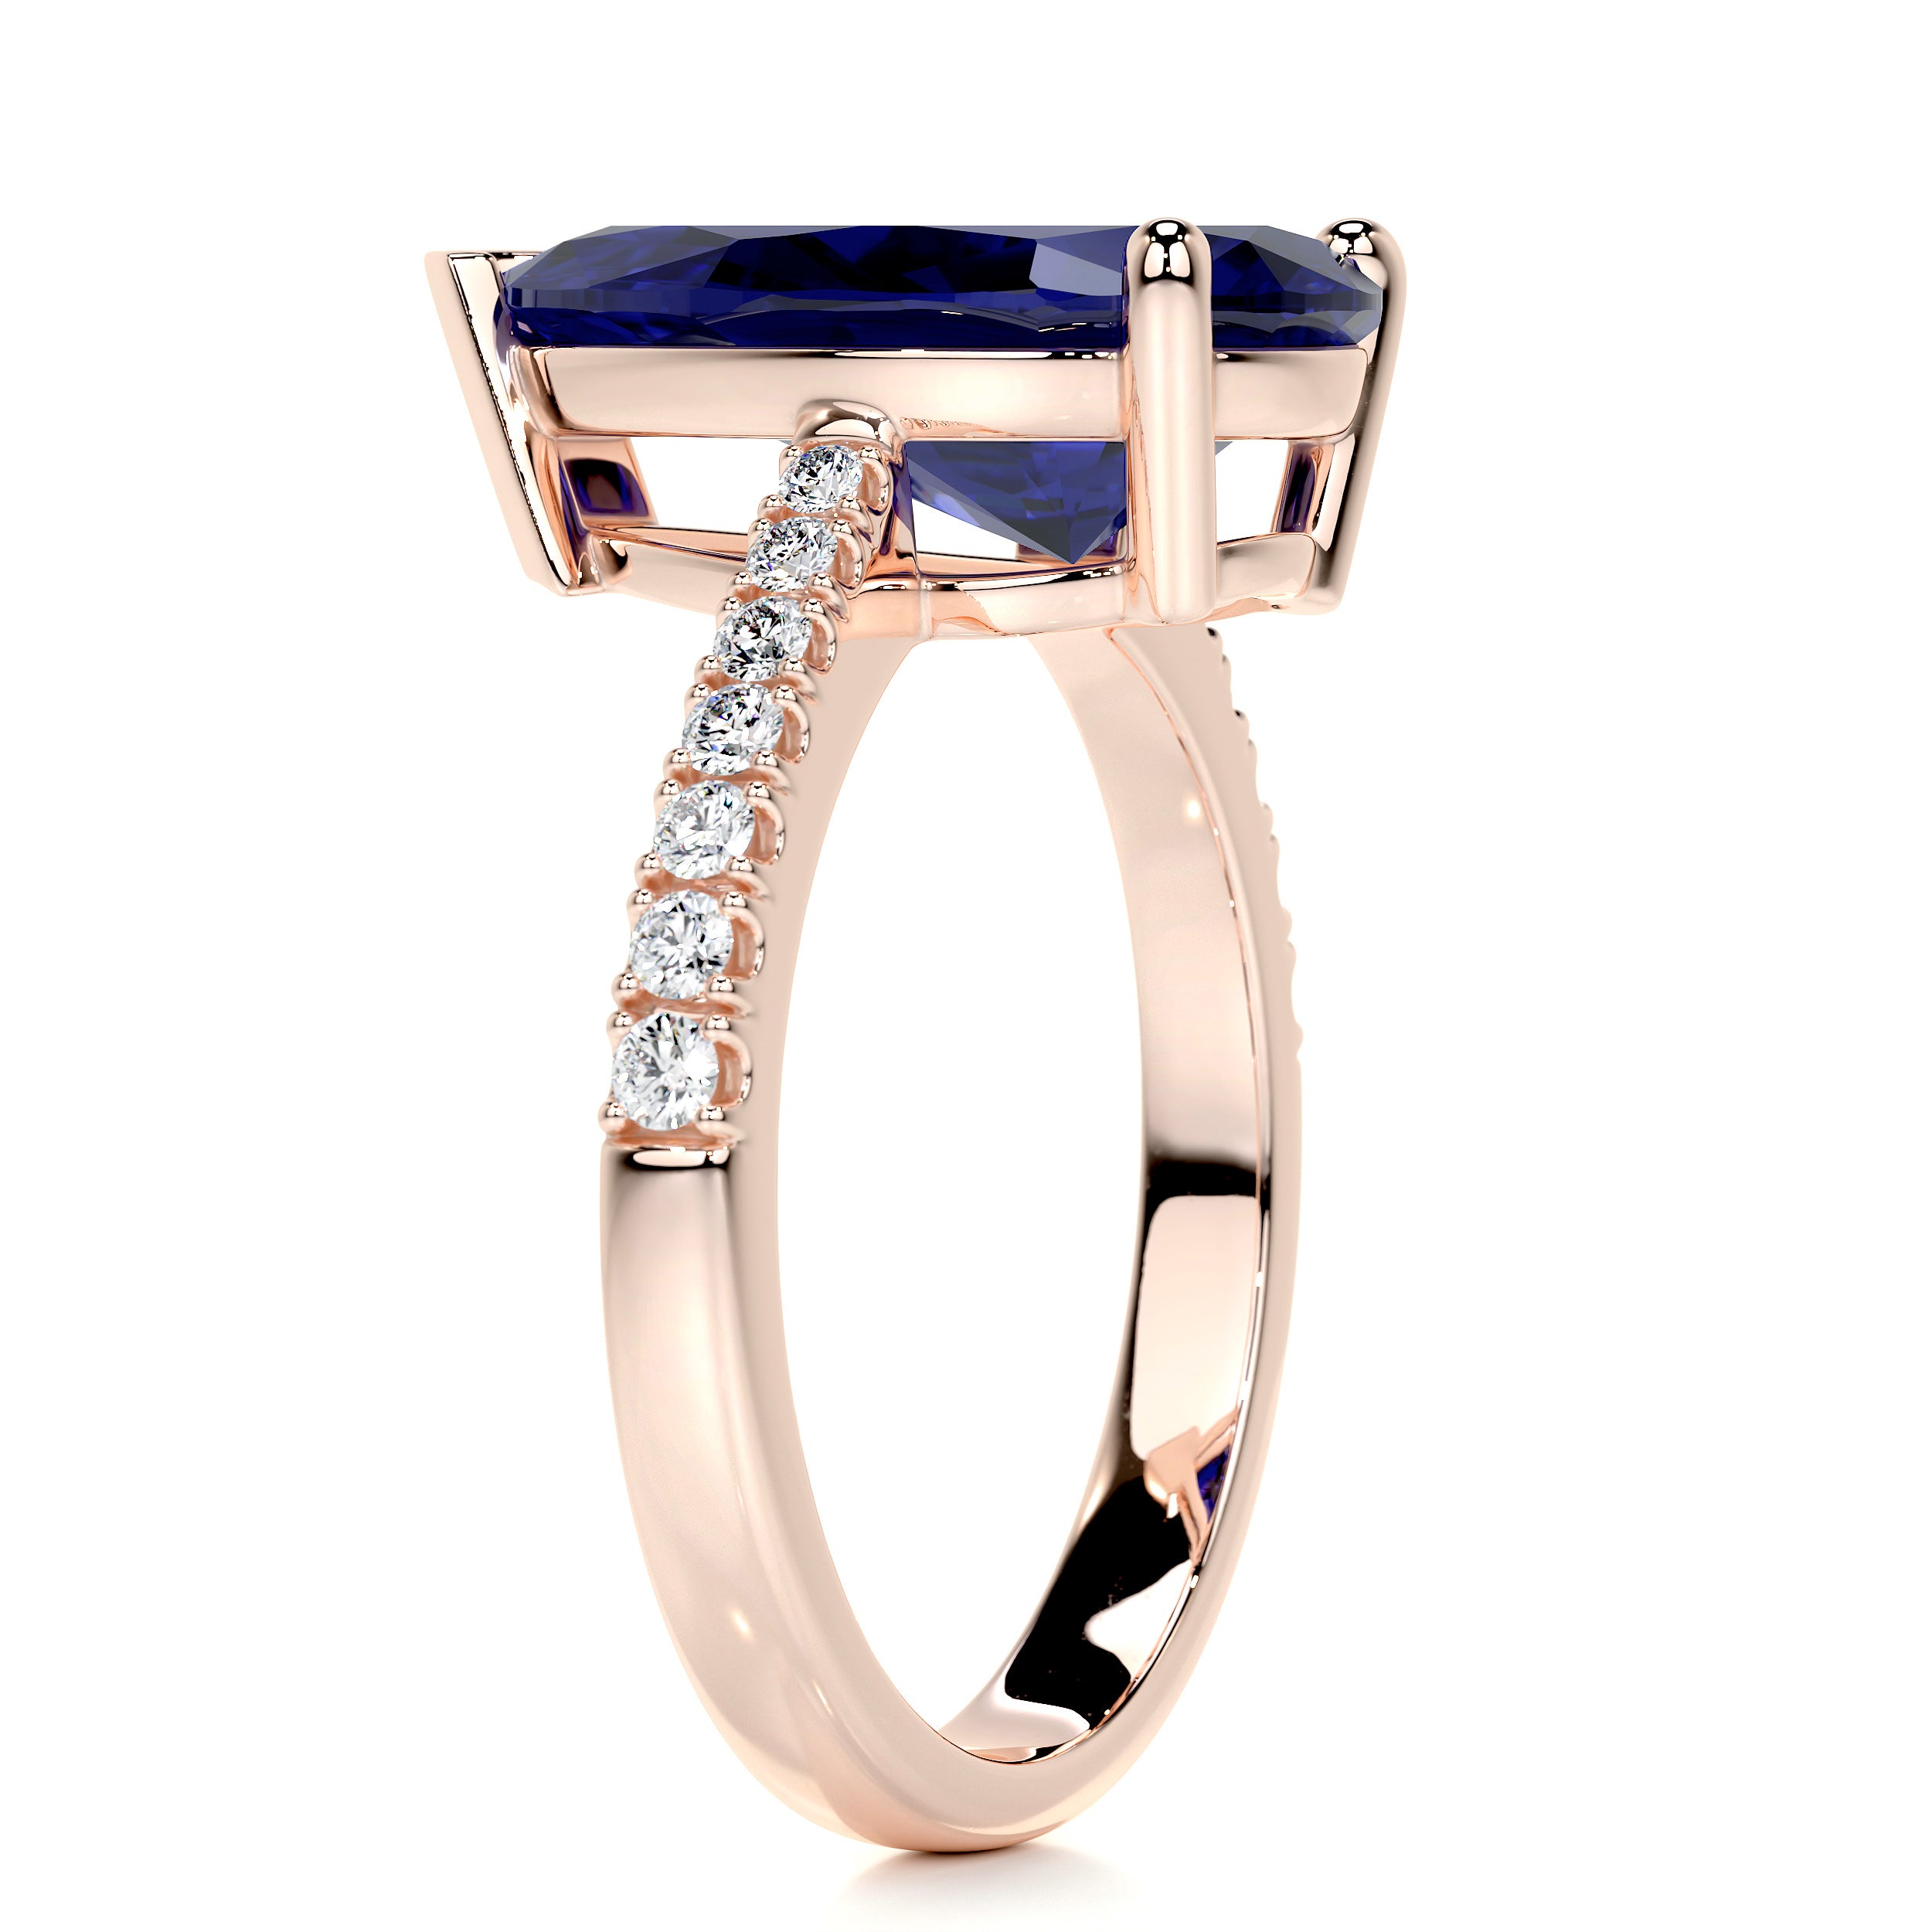 Anna Gemstone & Diamonds Ring   (4.15 Carat) -14K Rose Gold